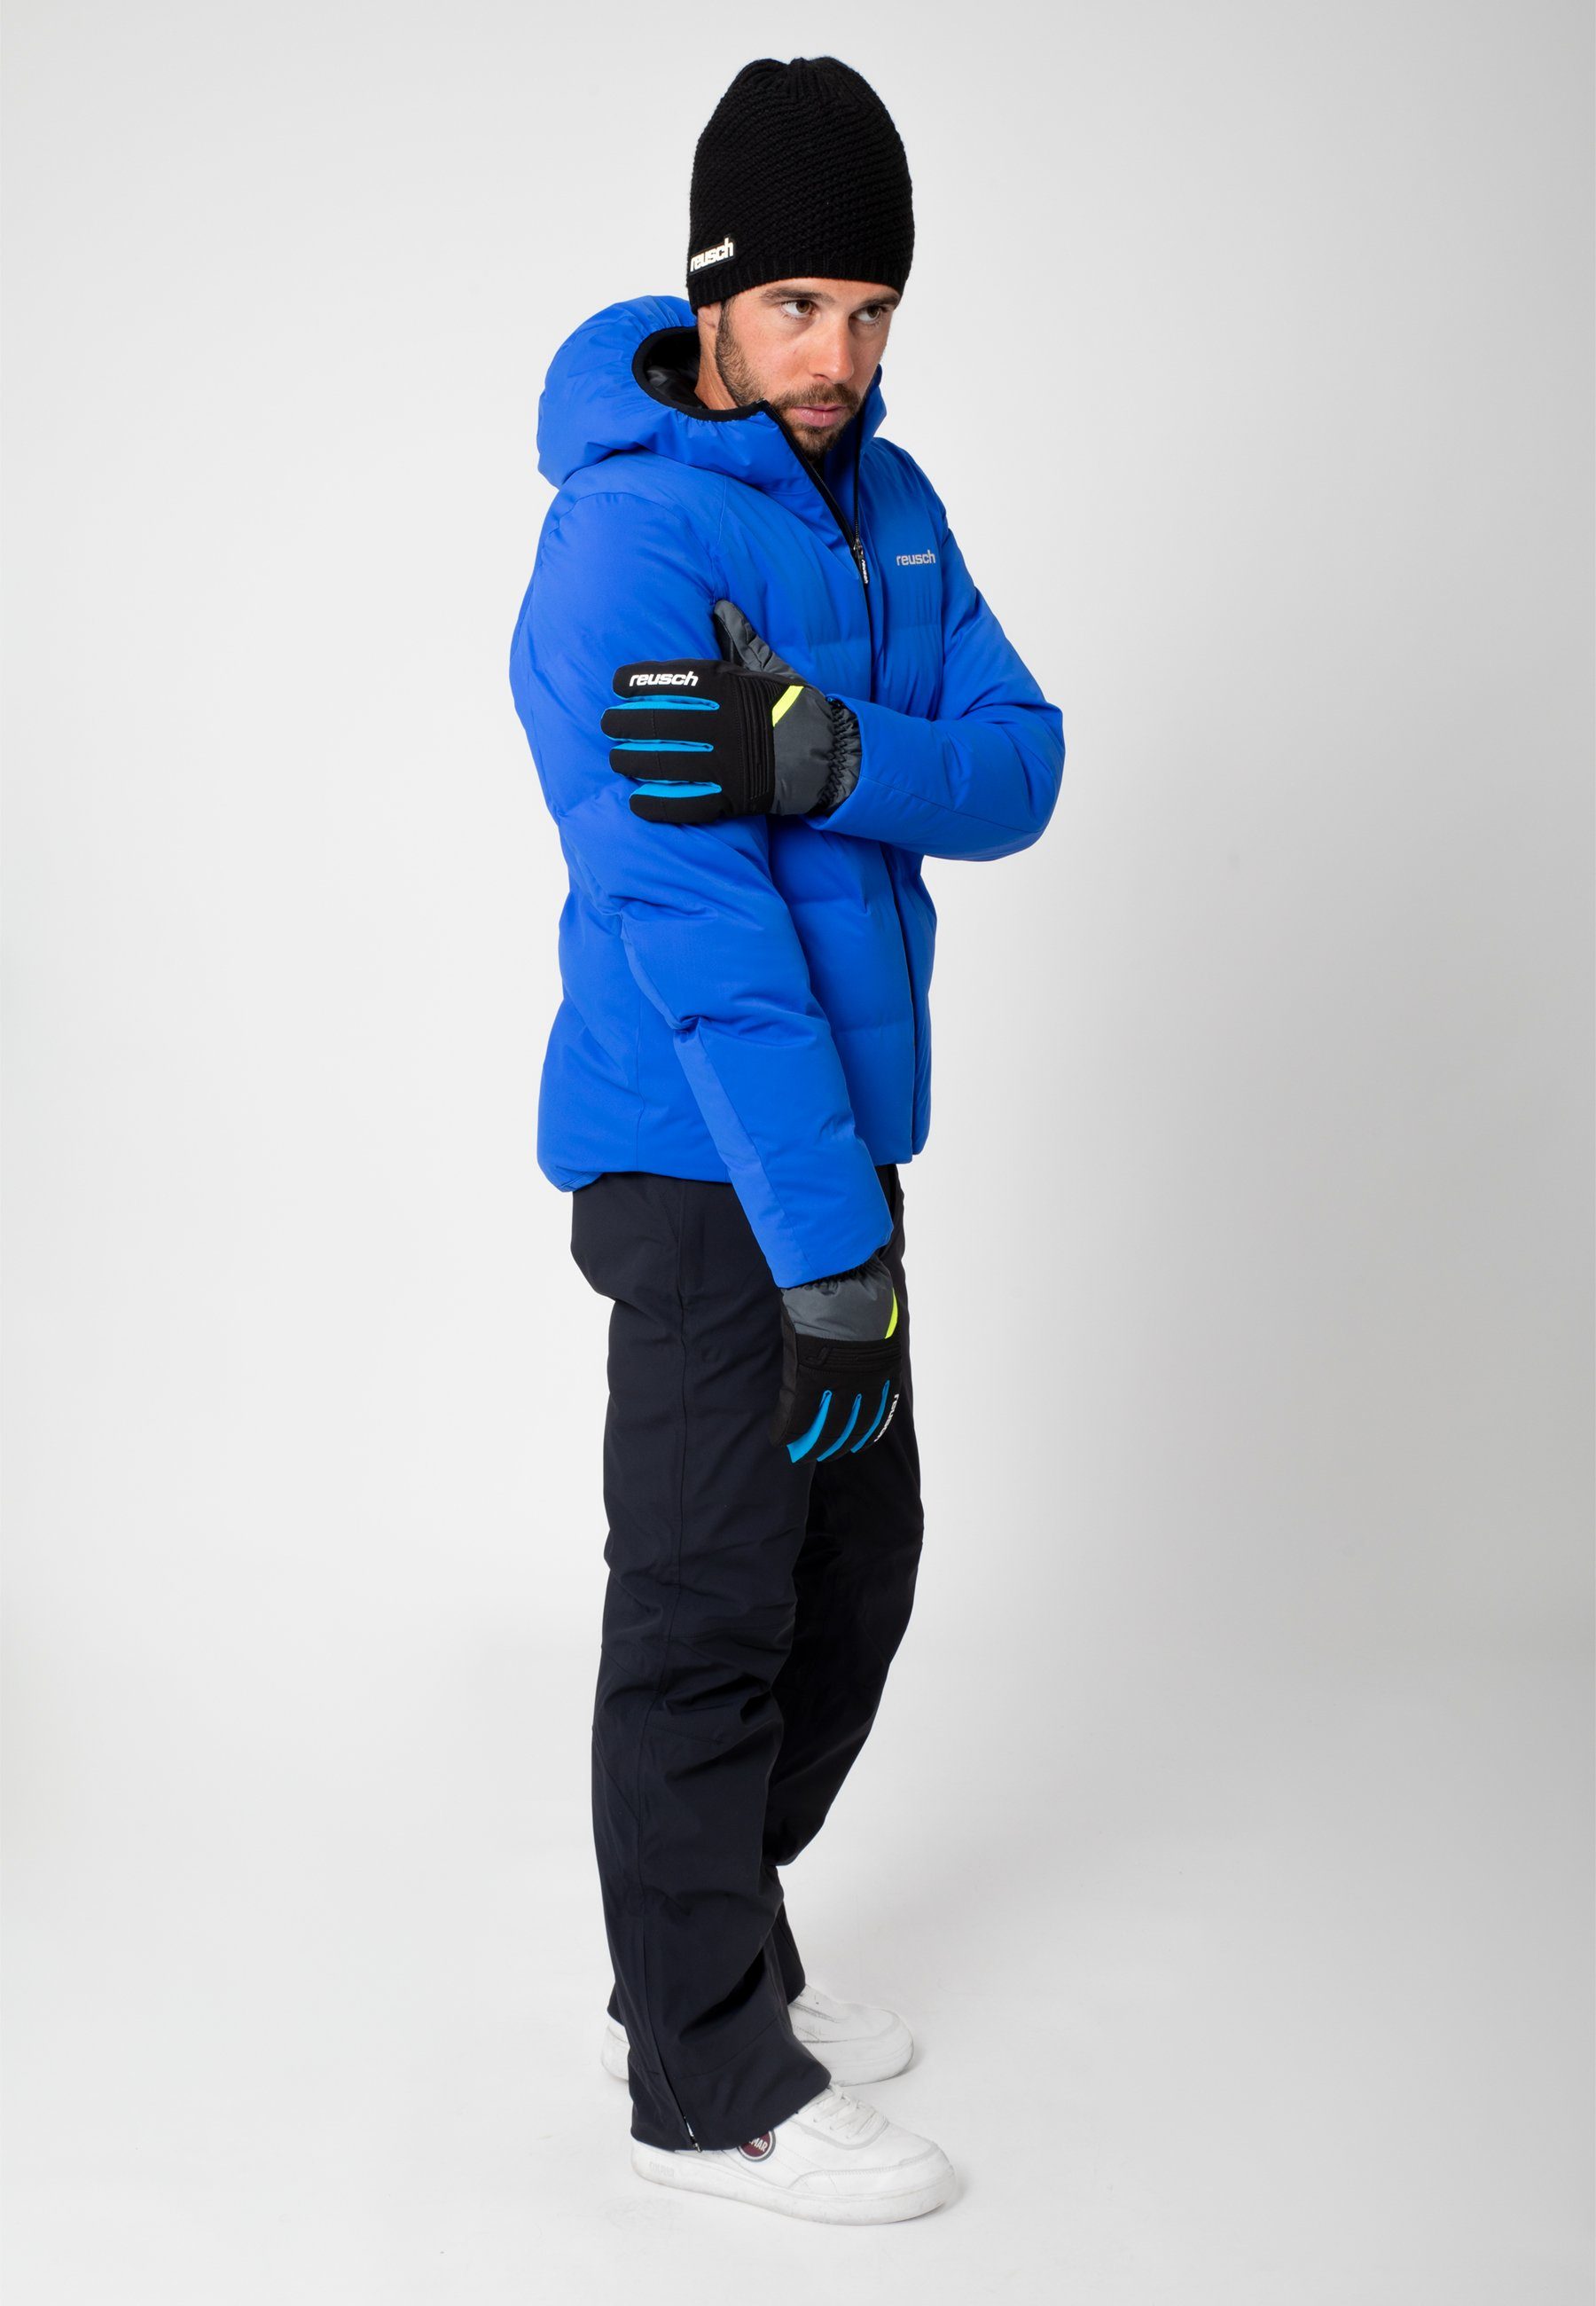 Baldo R-TEX Reusch Skihandschuhe XT grau-gelb wasserdicht warm und